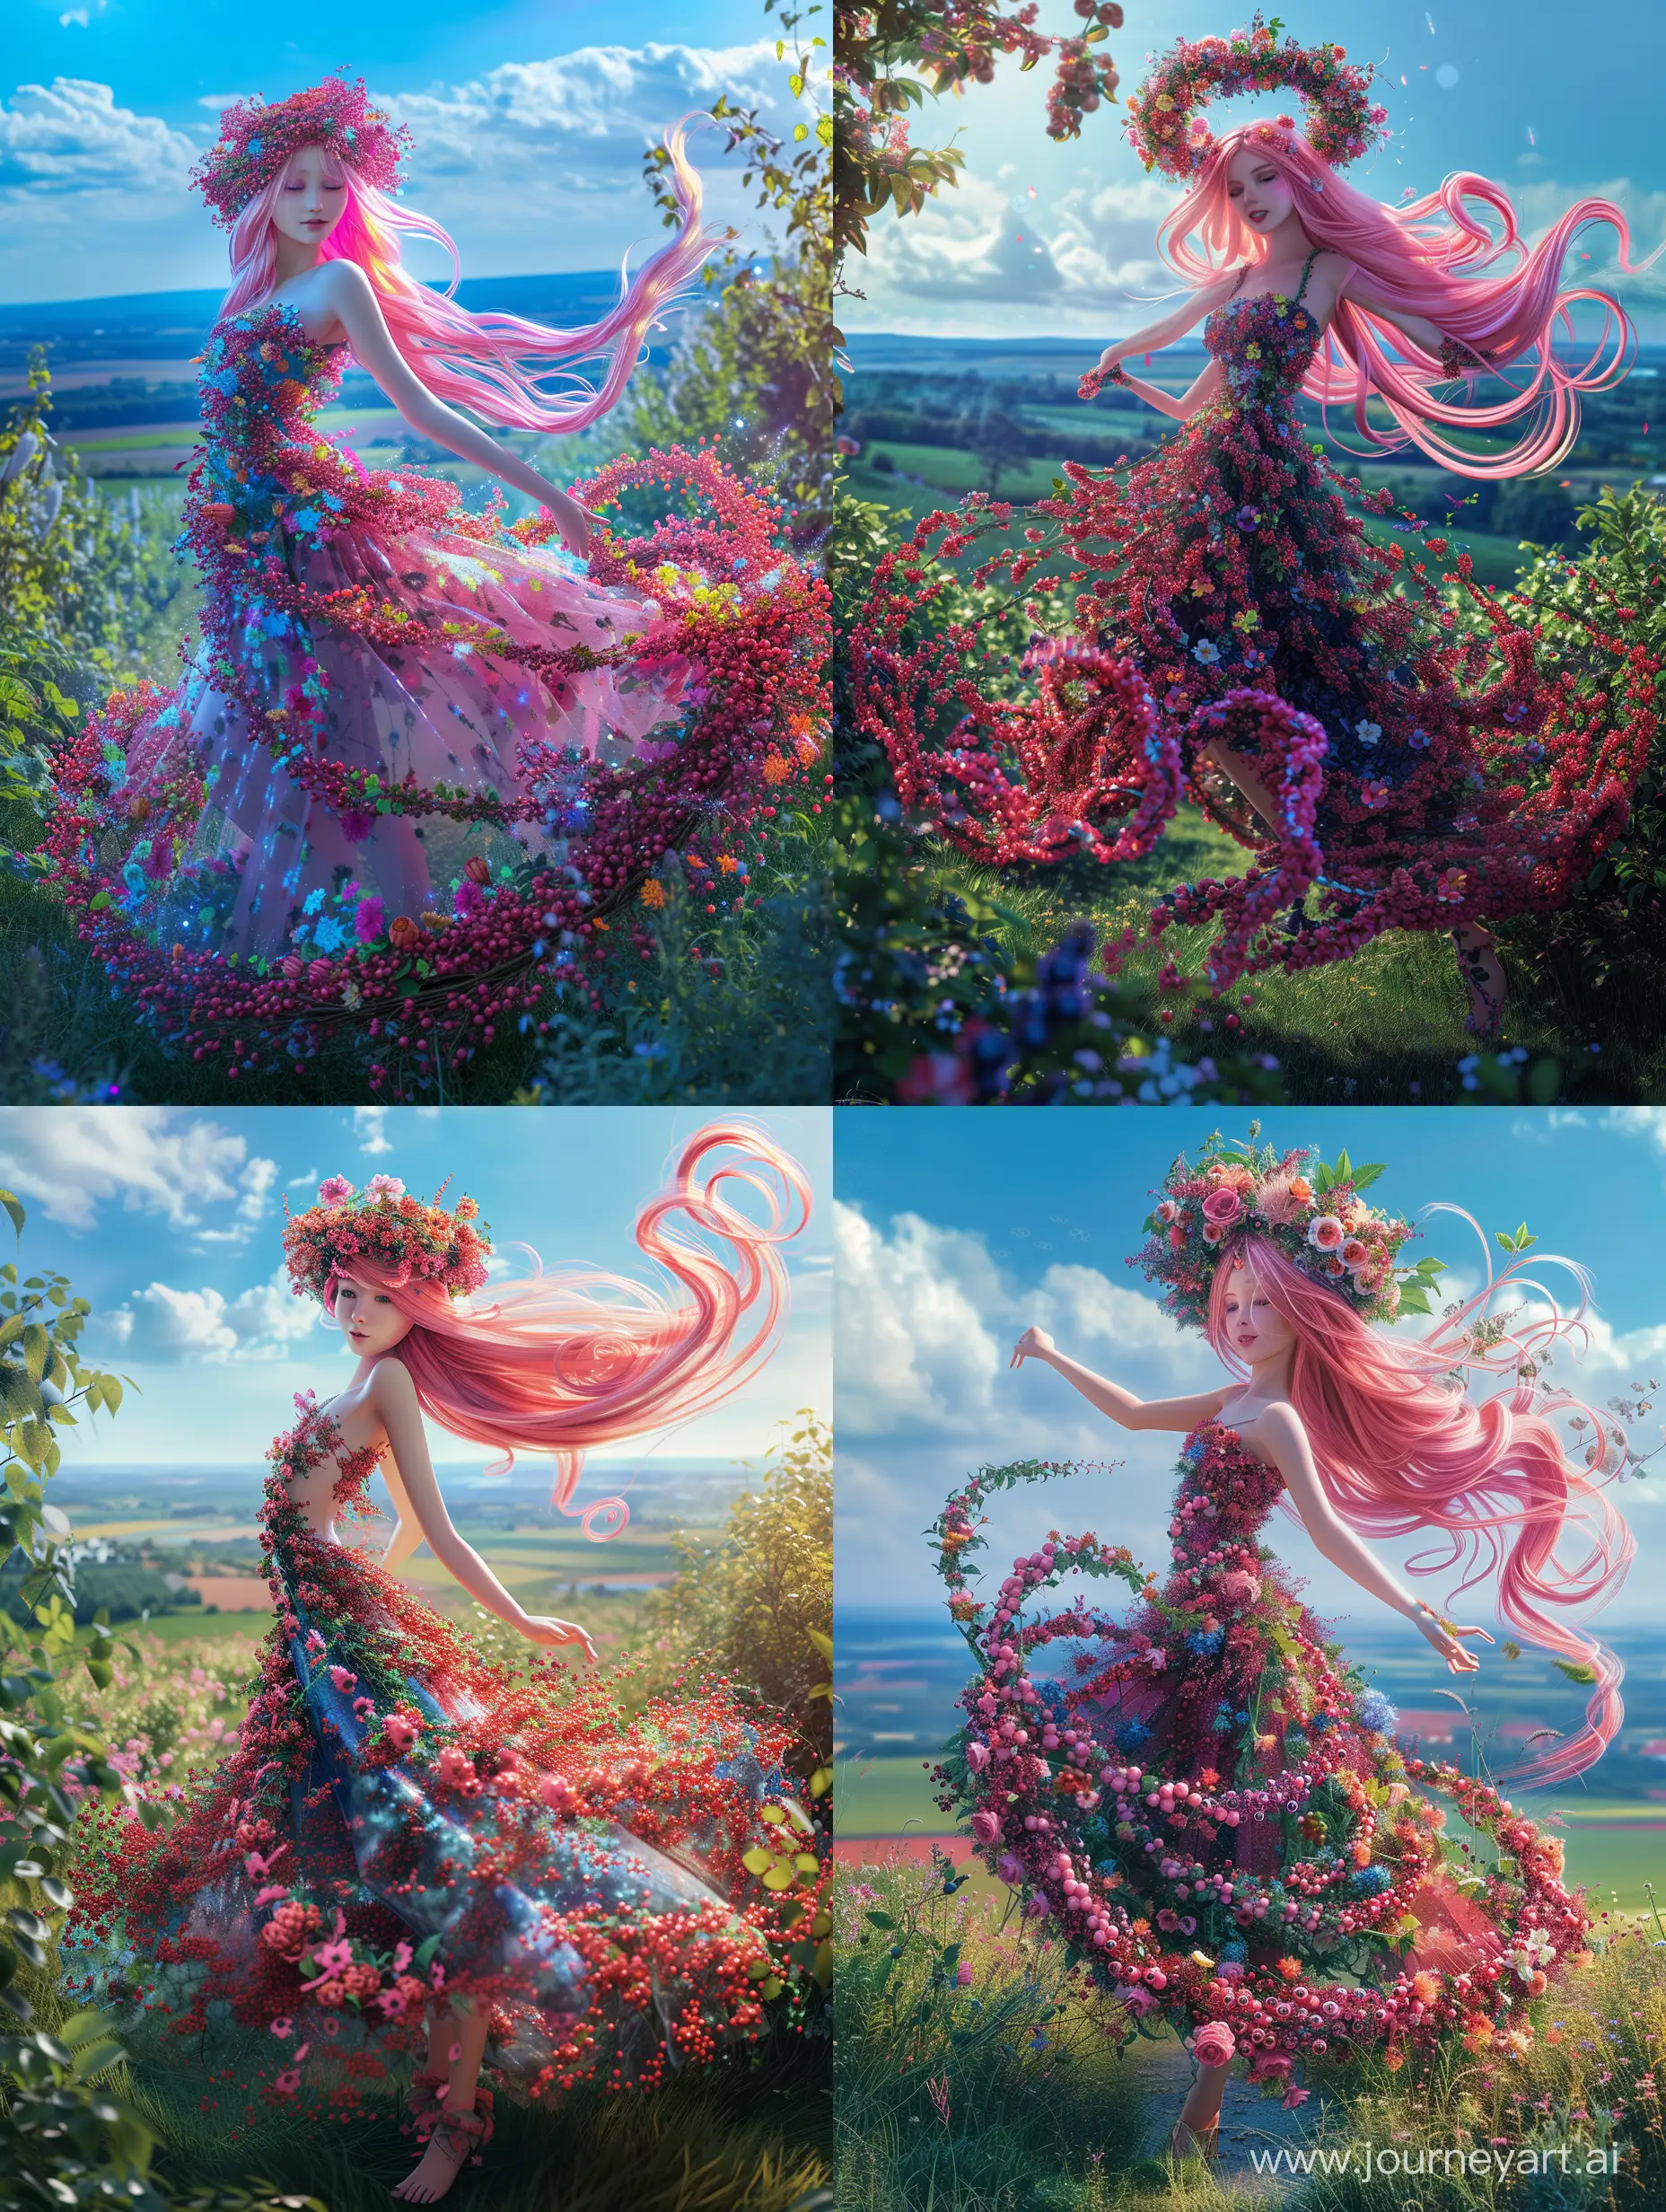 Королева-лето, невероятно красивая девушка в полный рост, с розовыми длинными волосами, на голове венок из цветов, в платье из ягод и цветов кружится танцует в летнем саду, красивый пейзаж на фоне, синее небо, растут ягоды, продолжение платья из цветов, завихряются у подола платья, неоновые переливы, высокое разрешение, эстетично, красиво, яркое освещение, фотореализм